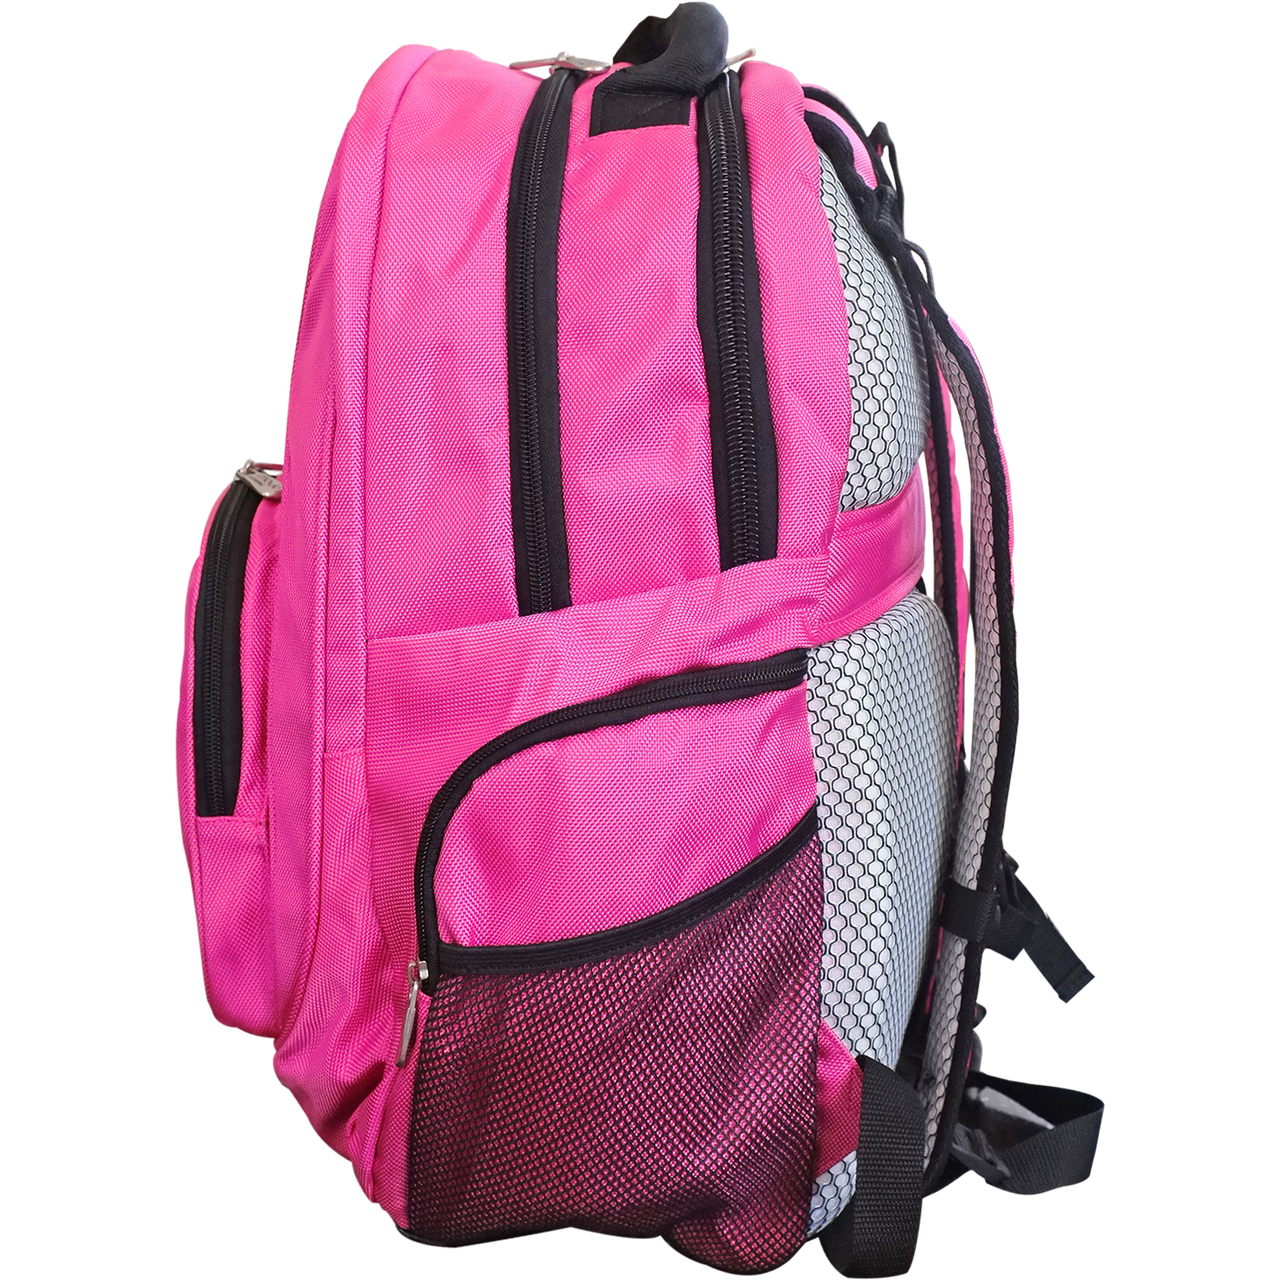 Ravens Backpack | Baltimore Ravens Laptop Backpack- Pink